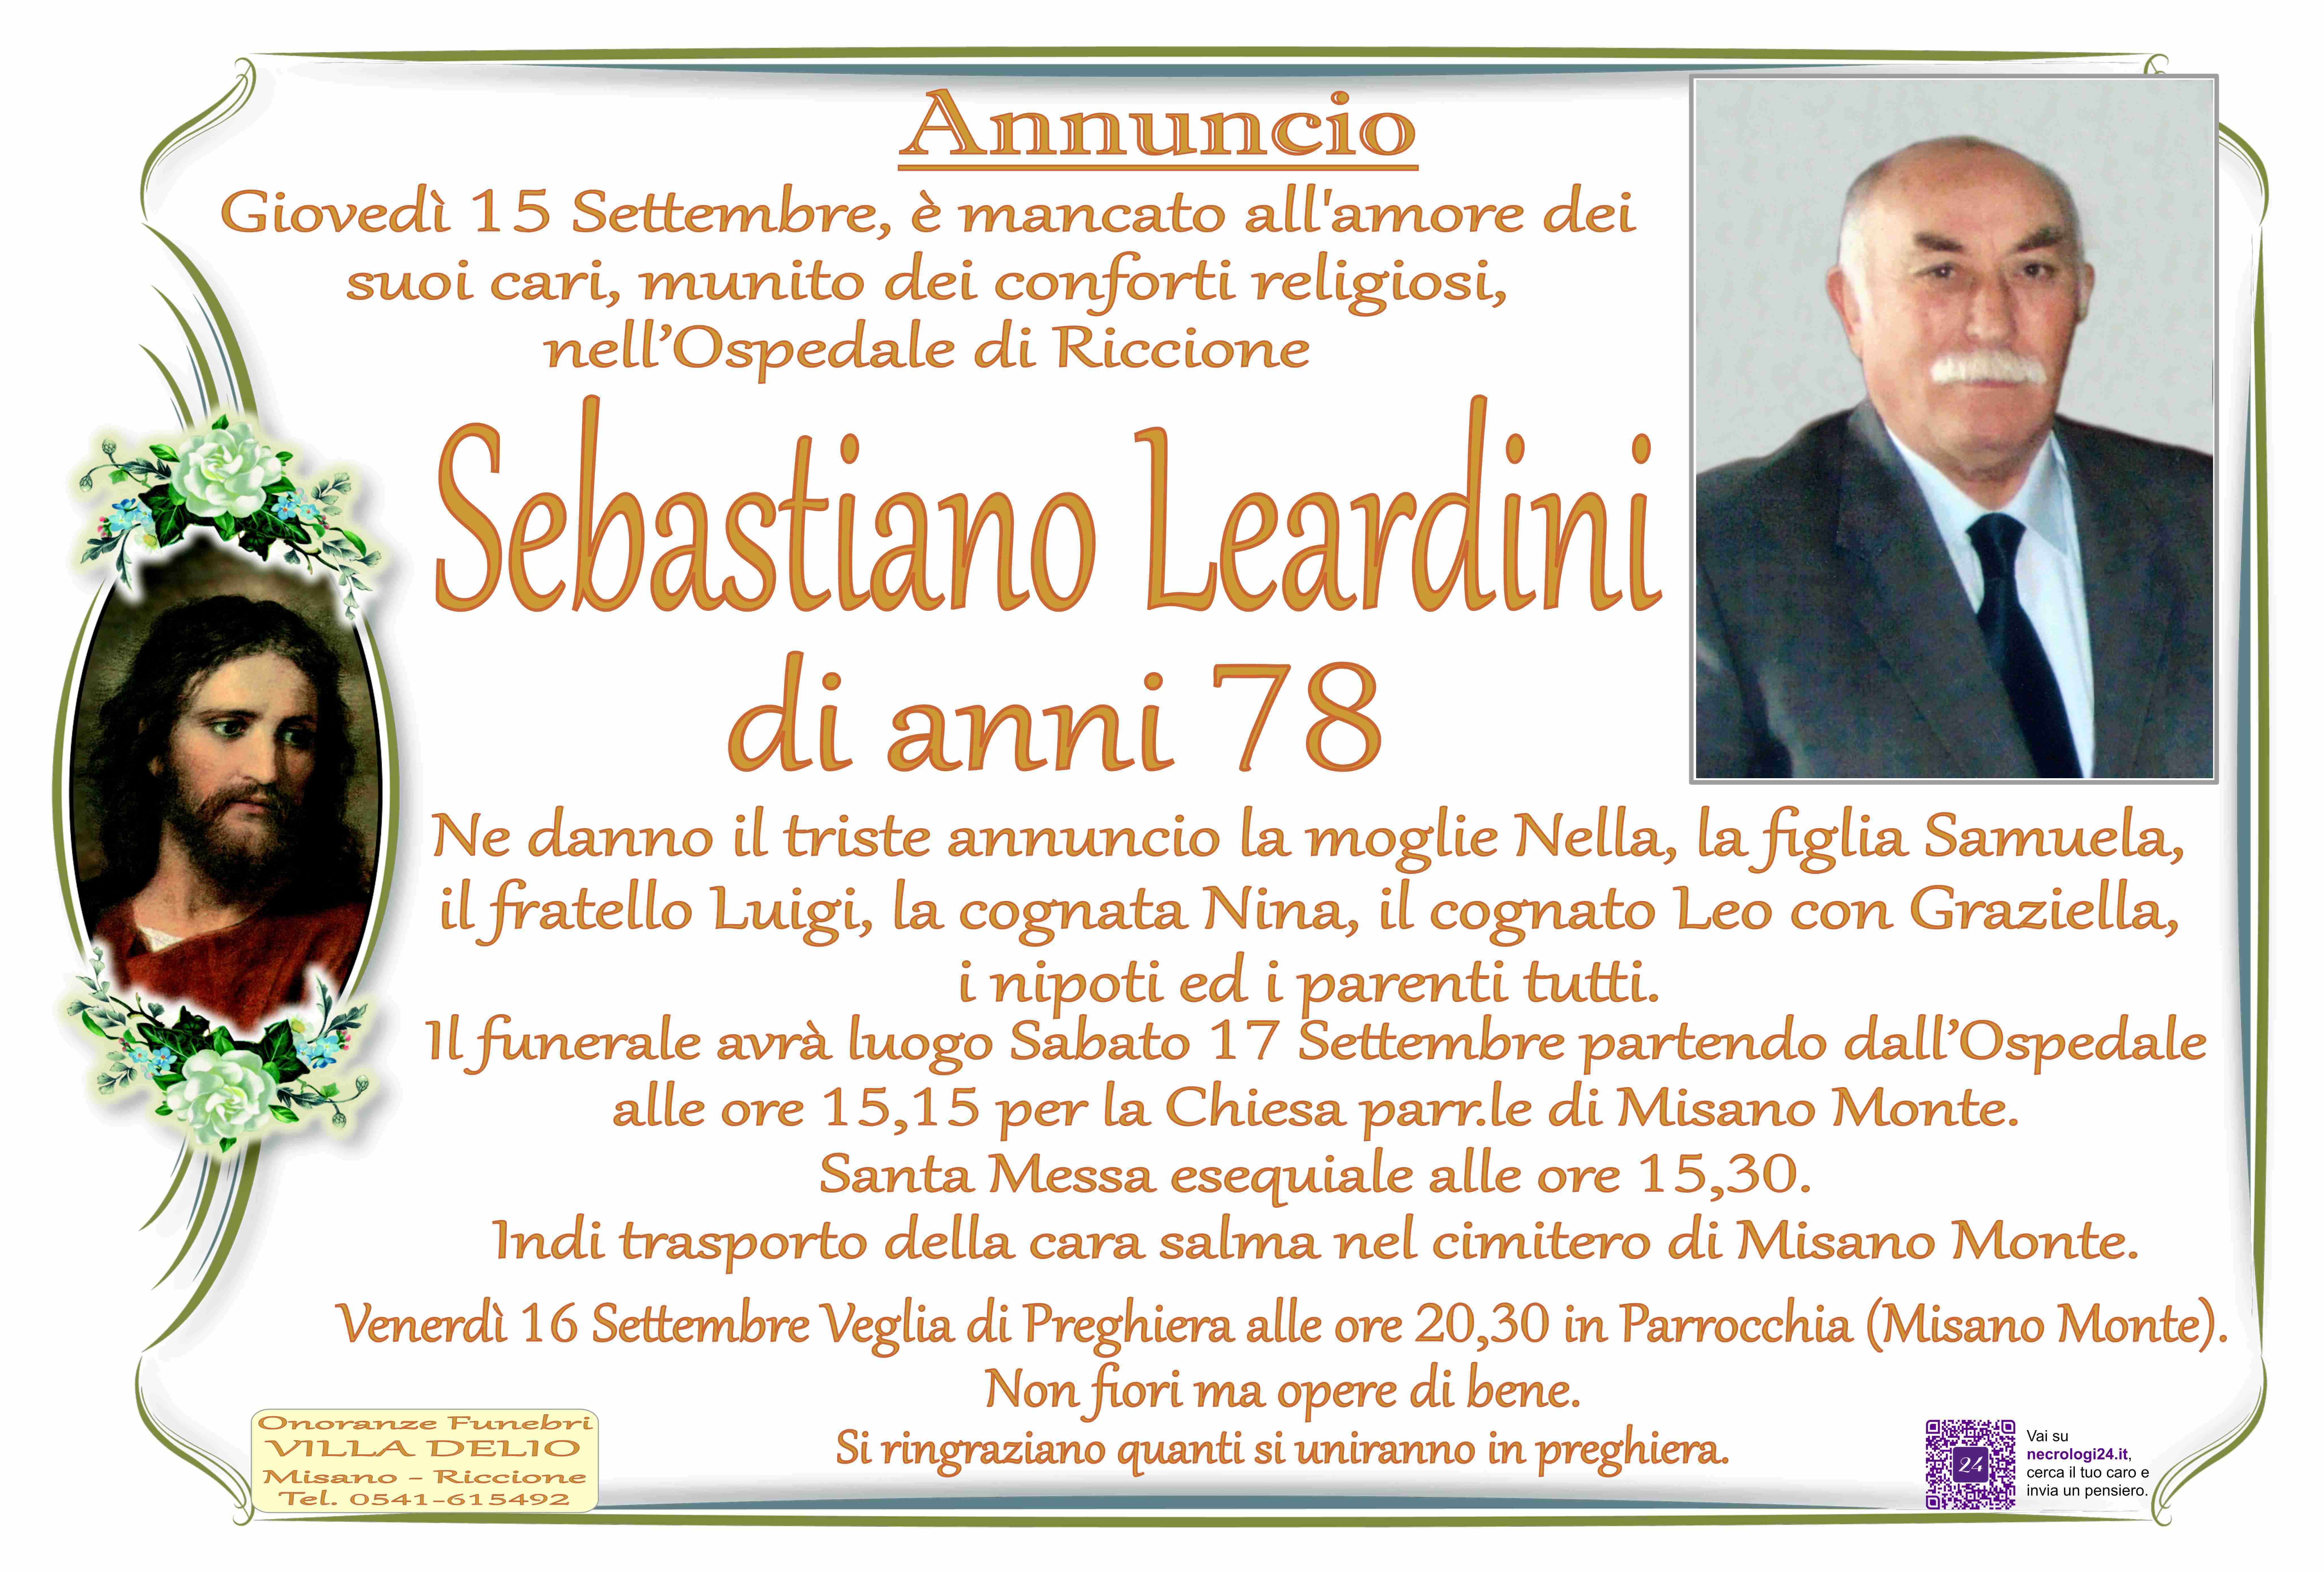 Sebastiano Leardini